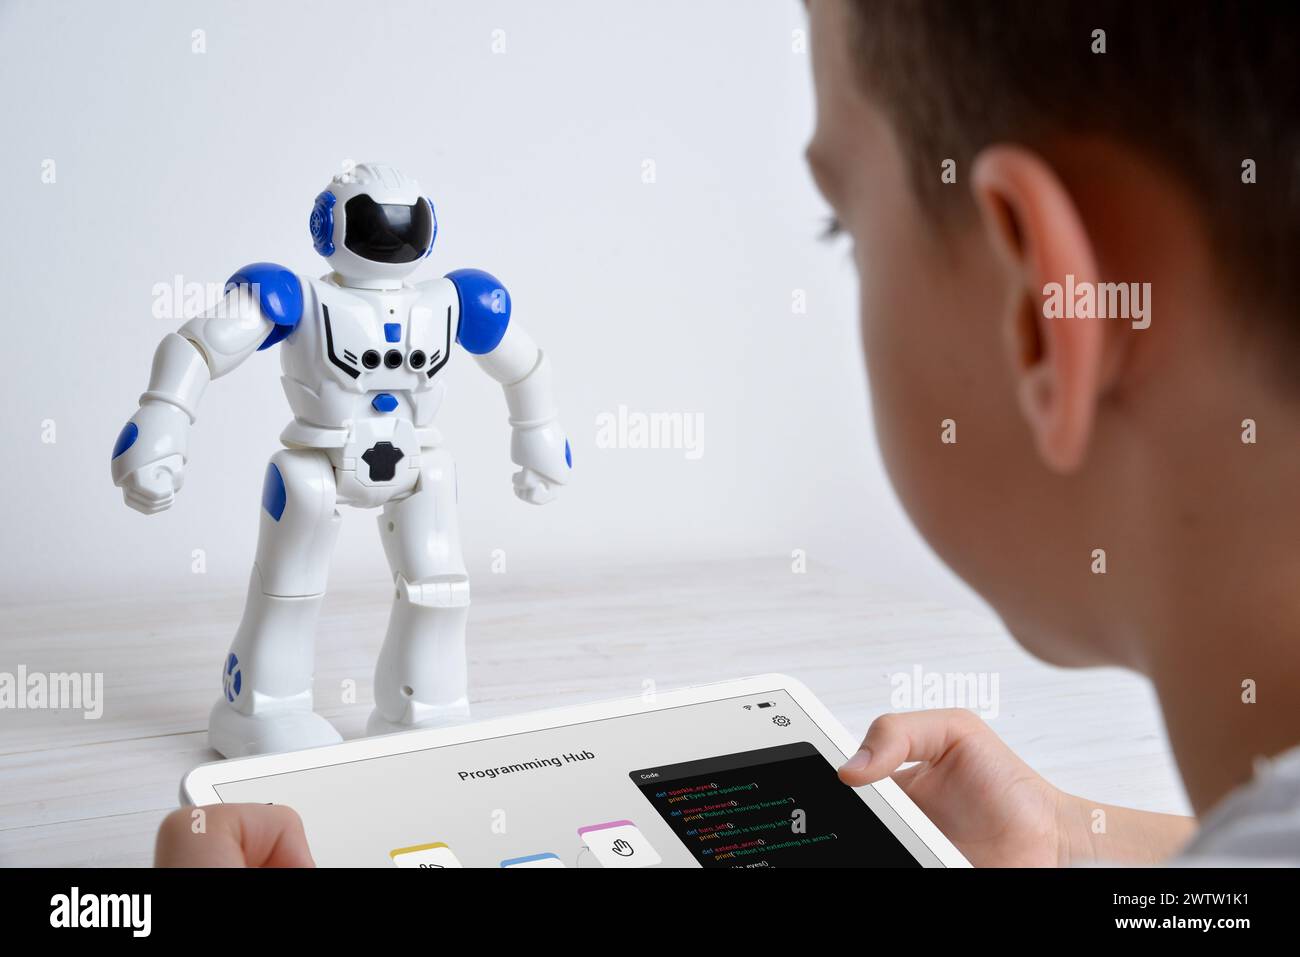 Le garçon contrôle le robot à l'aide de la tablette sur le bureau. Illustrer l'éducation, la technologie, l'innovation et les expériences d'apprentissage interactif en robotique et en programmation Banque D'Images